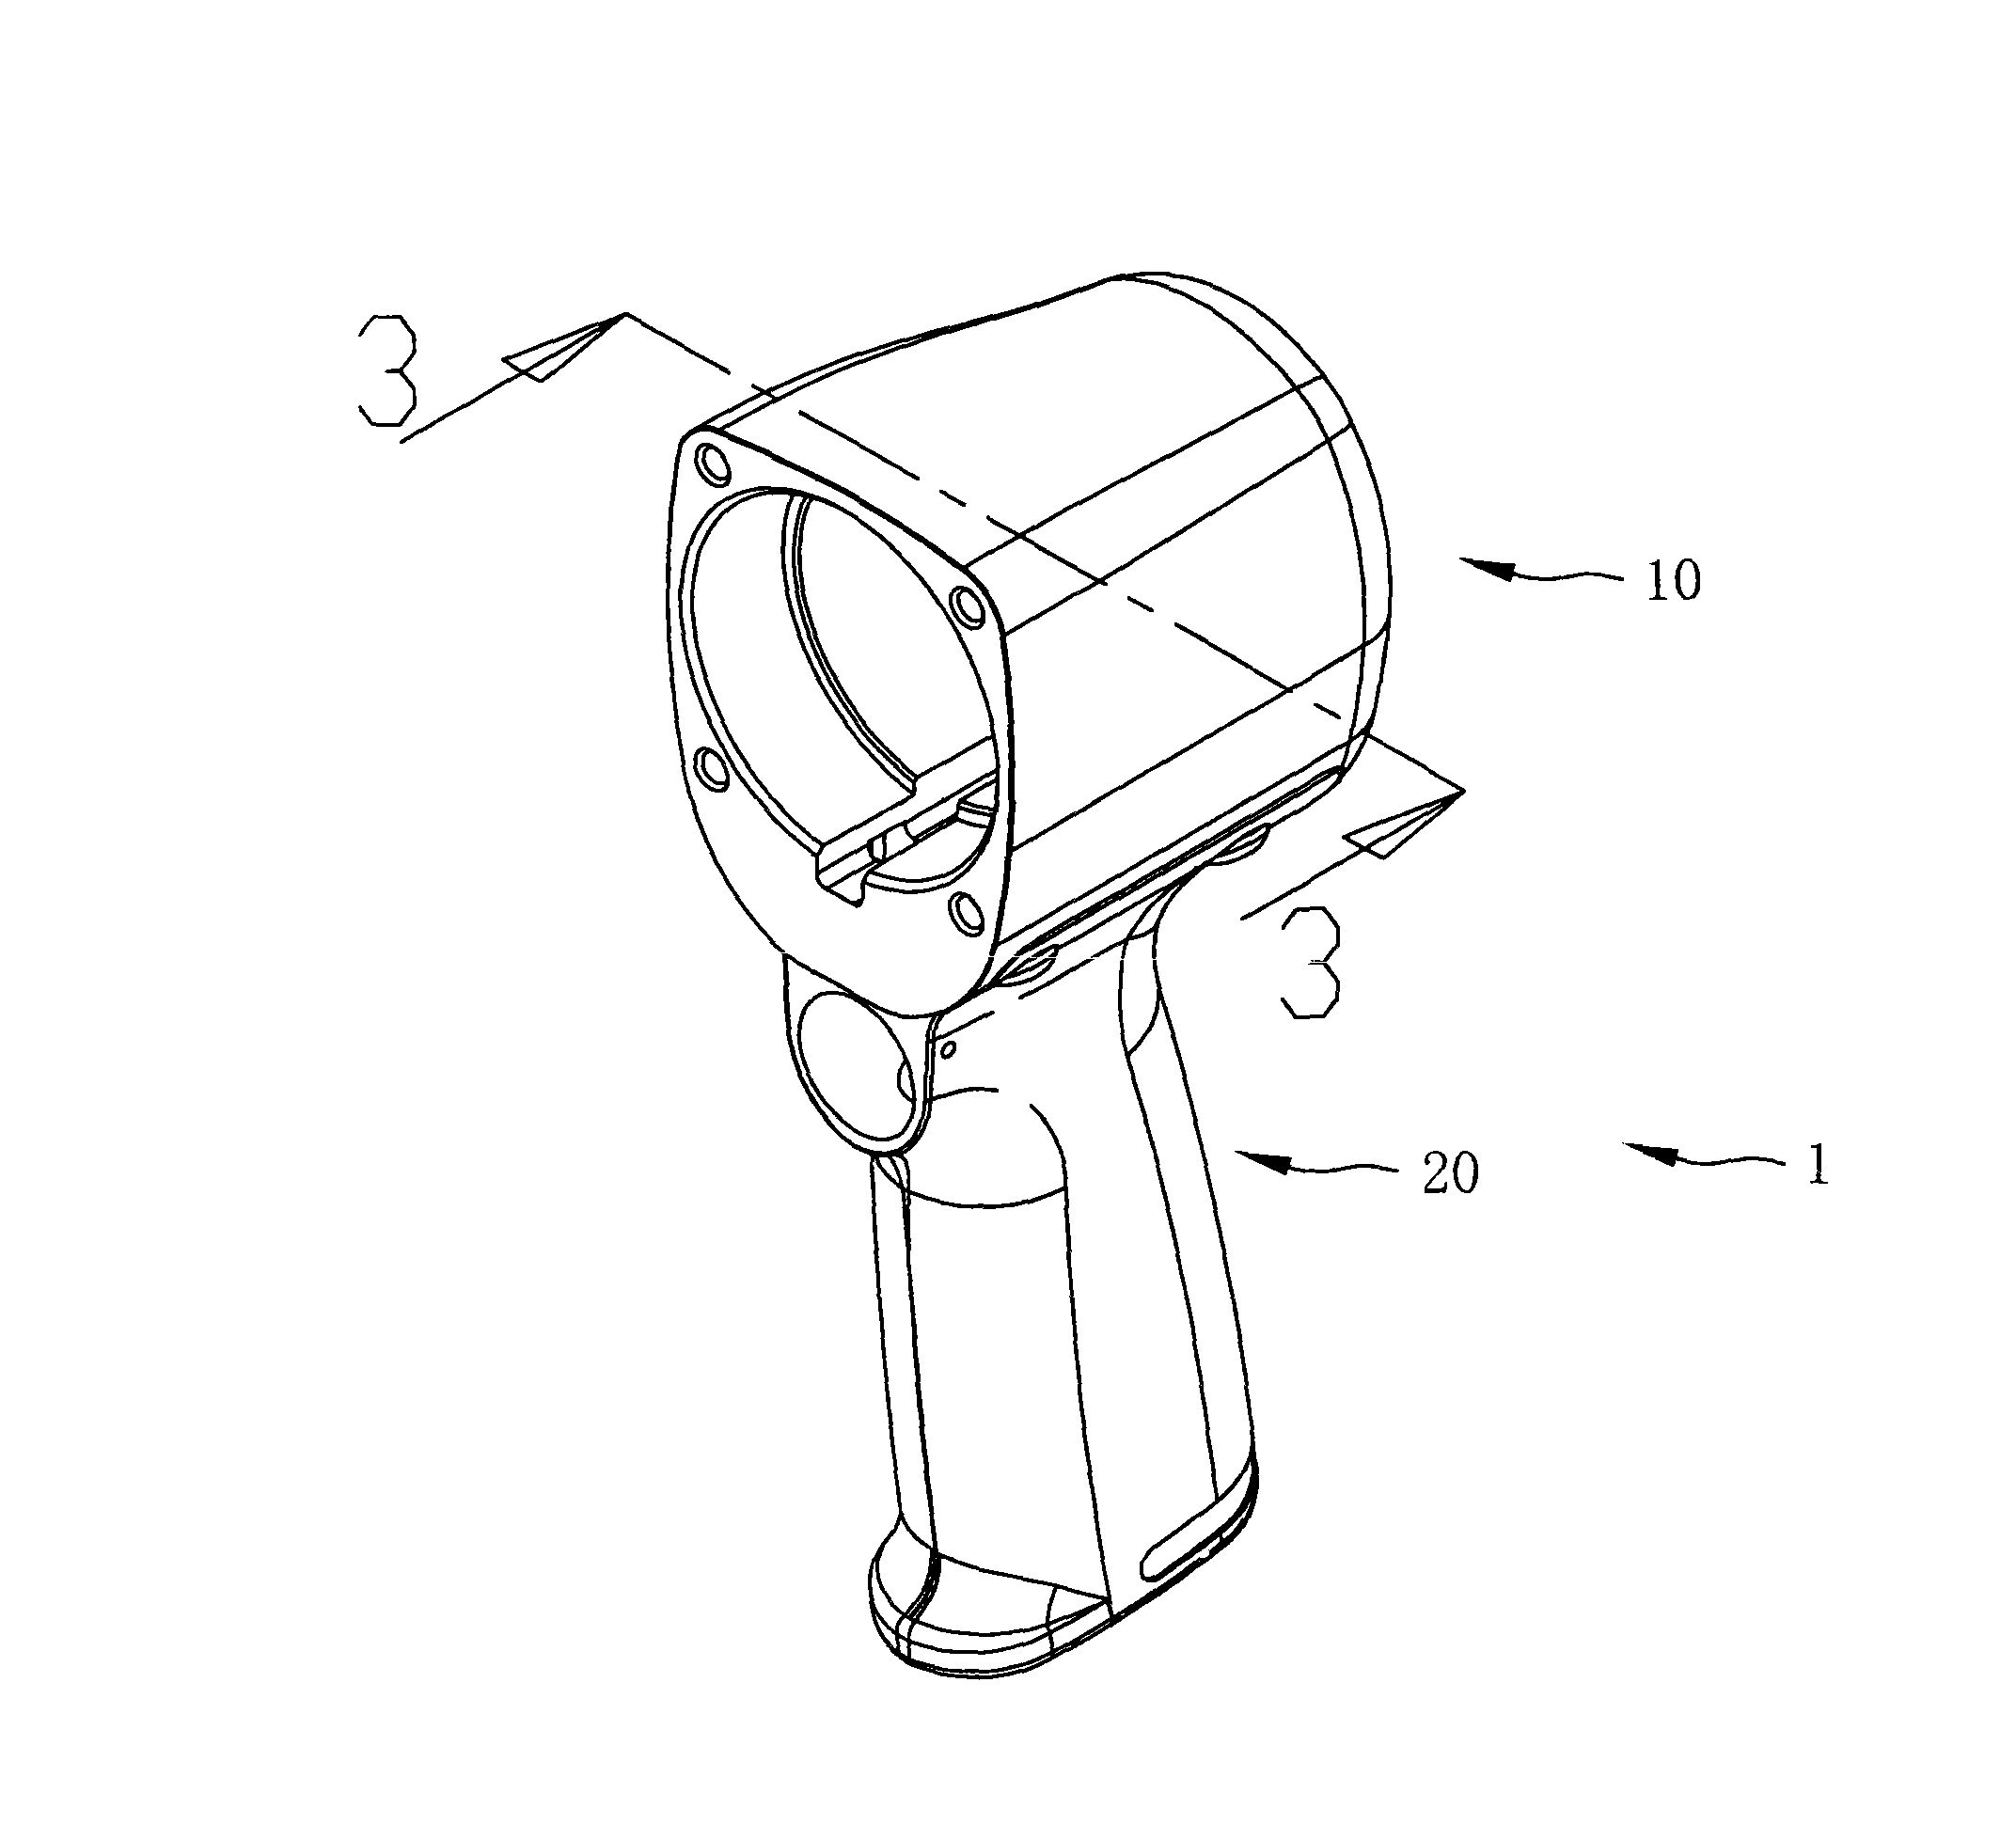 Pneumatic tool combining gun body and grab handle